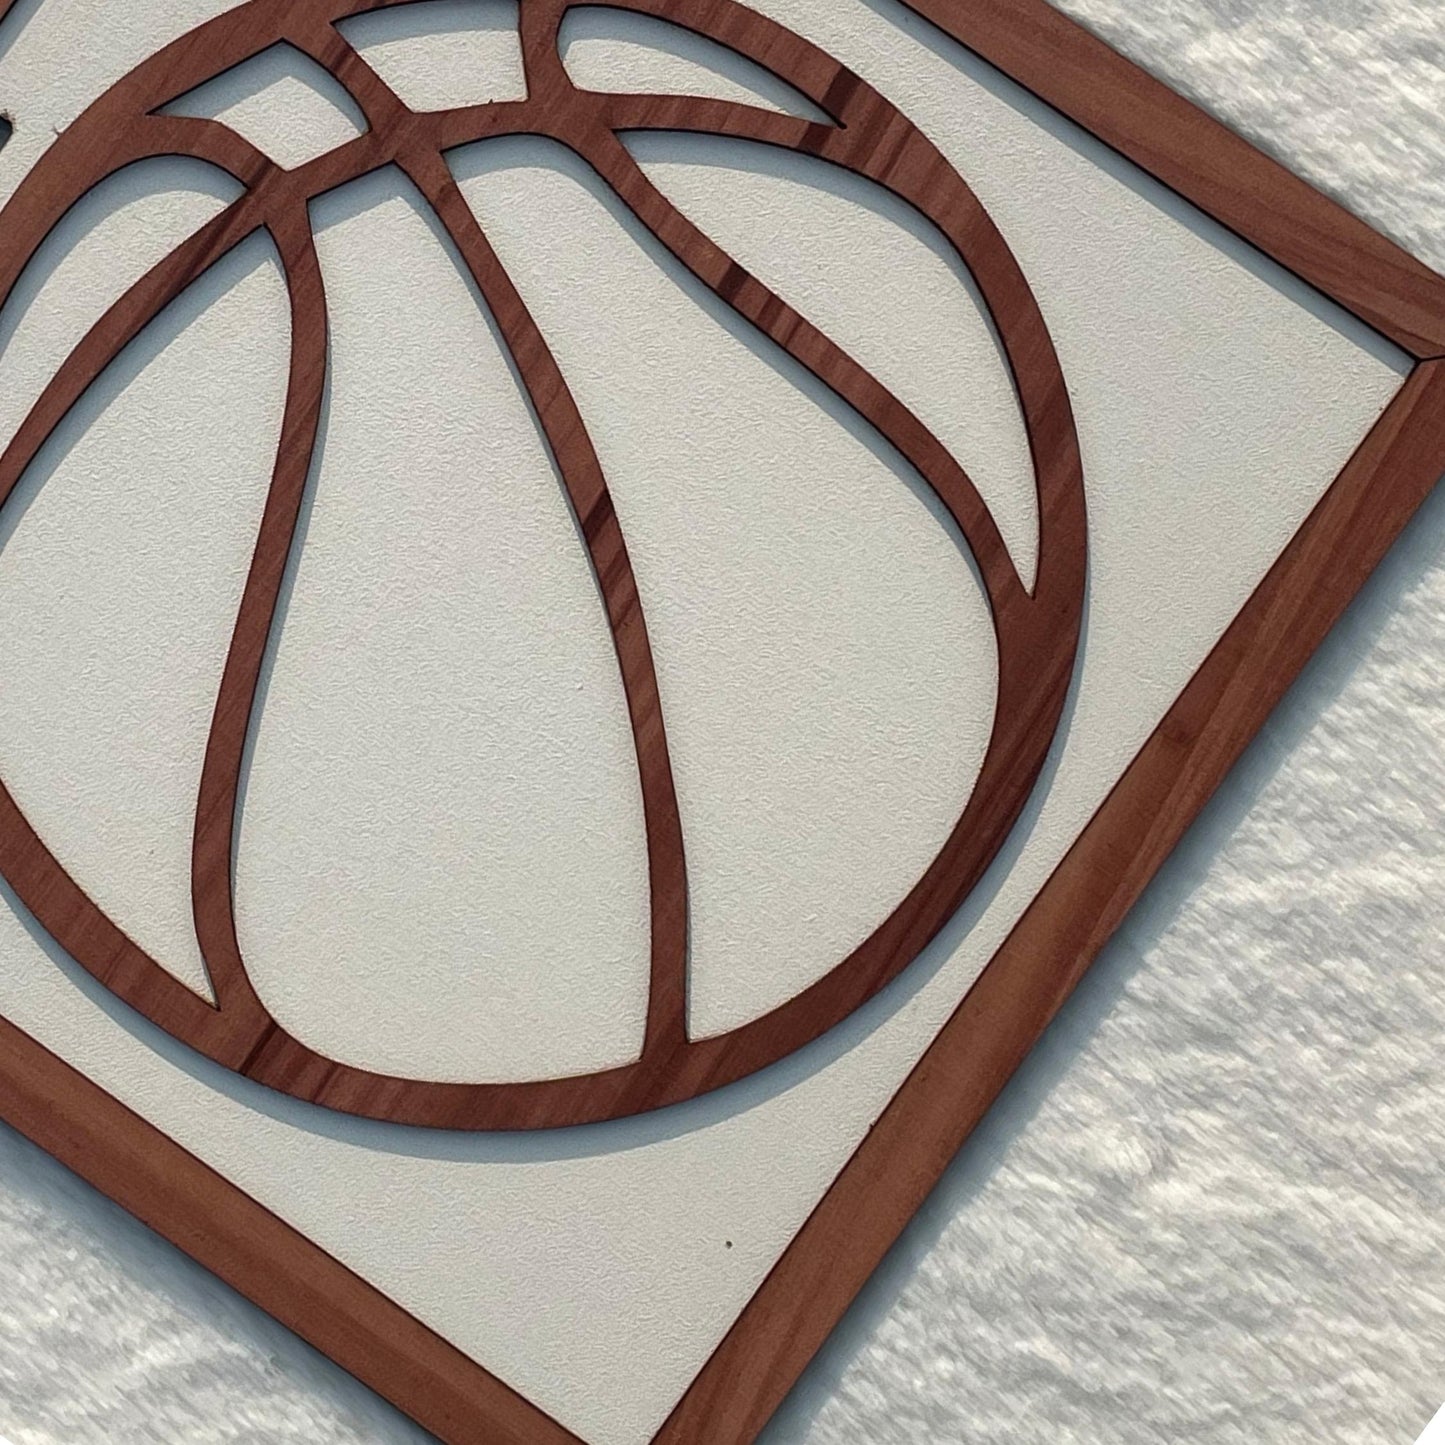 Basketball Framed Wooden Wall Art